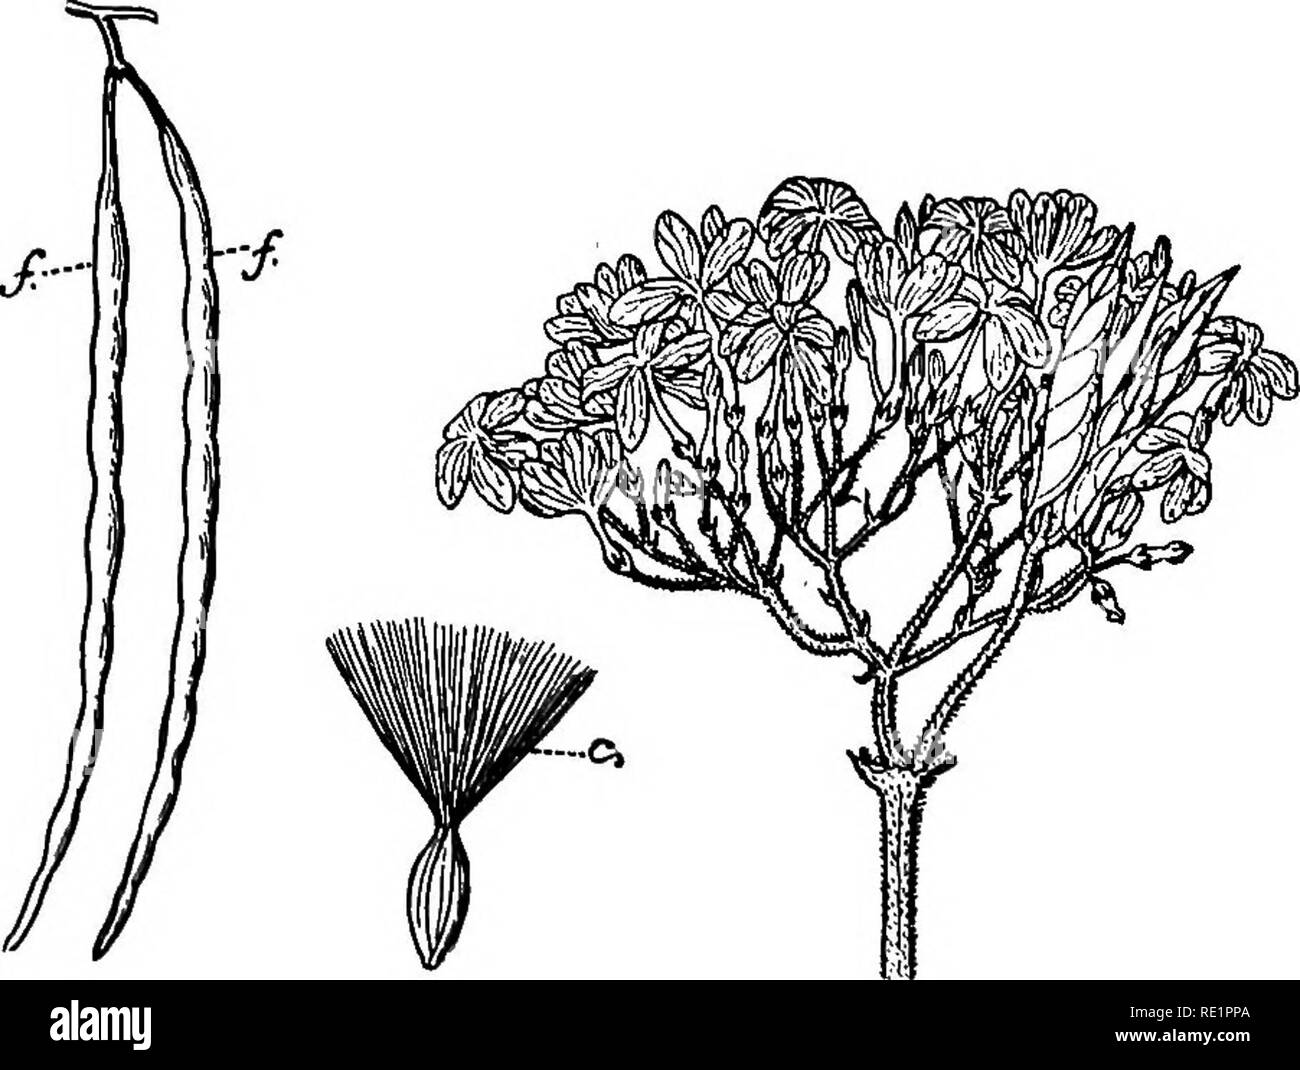 . Un manual de botánica de India. La botánica. 241 COROLLIFLORyE rosea) (fig. 206), plantados en jardines por sus flores de color blanco o rosado guapo; (8) chhatim {Alstonia scholaris), un gran árbol con hojas whorled; (9) {Holar kurhchi- rhena anti-dysenterica) (fig. 207), un árbol silvestre, cuya corteza produce una decocción que es específica para la disentería; (10) dudhi-lata o shamalata (/cAwocar/Mj frutescens), un arbusto de escalada. Willughbeia edulis. Fig^. 207.-Kurhchi {Holurrhena anti-dysentertcn) S/. Par de folículos, i, Coma en el IHe corona de una semilla. (Lata-am) -un arbusto de escalada con pedúnculos con- verted en Foto de stock